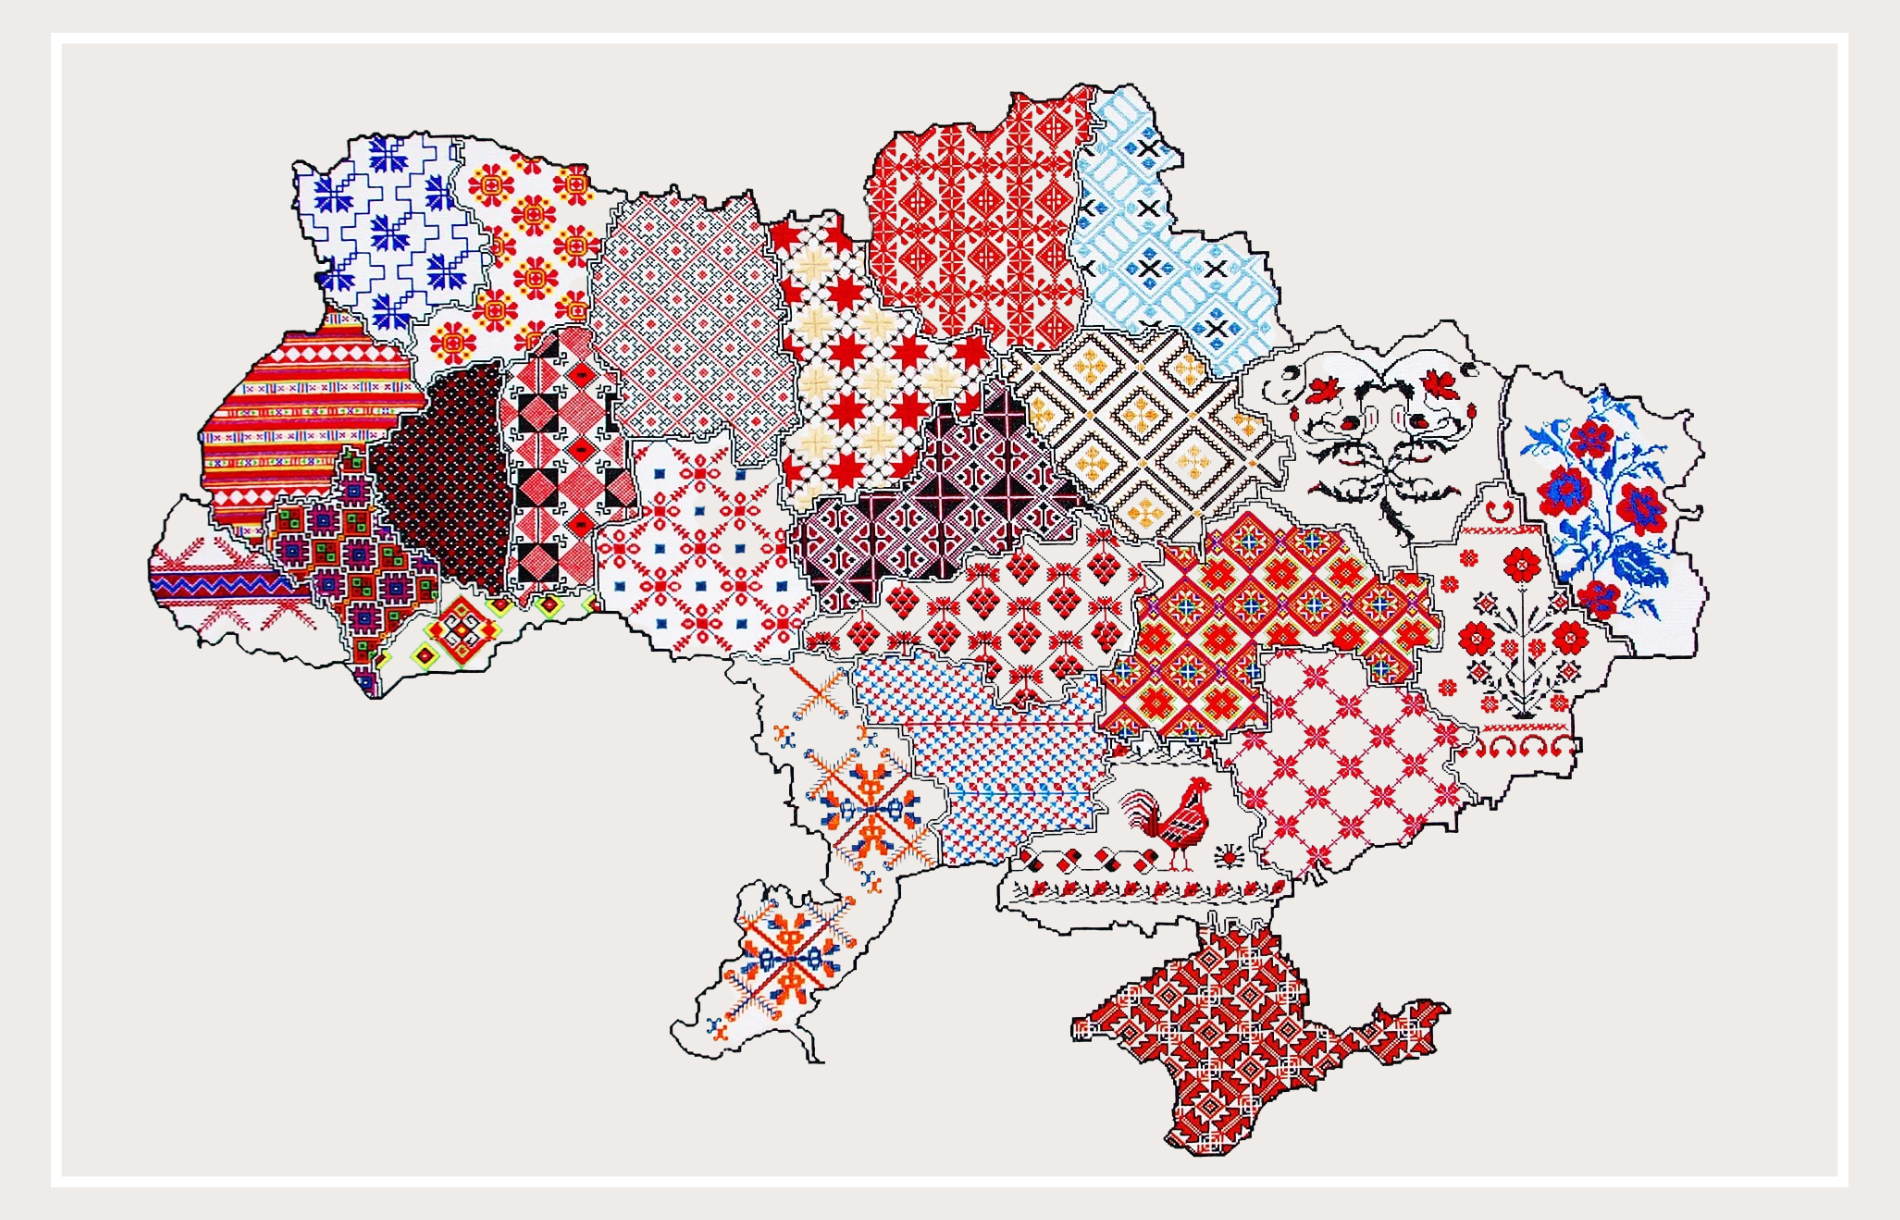 The Vyshyvanka A map of Vyshyvanka patterns across Ukraine